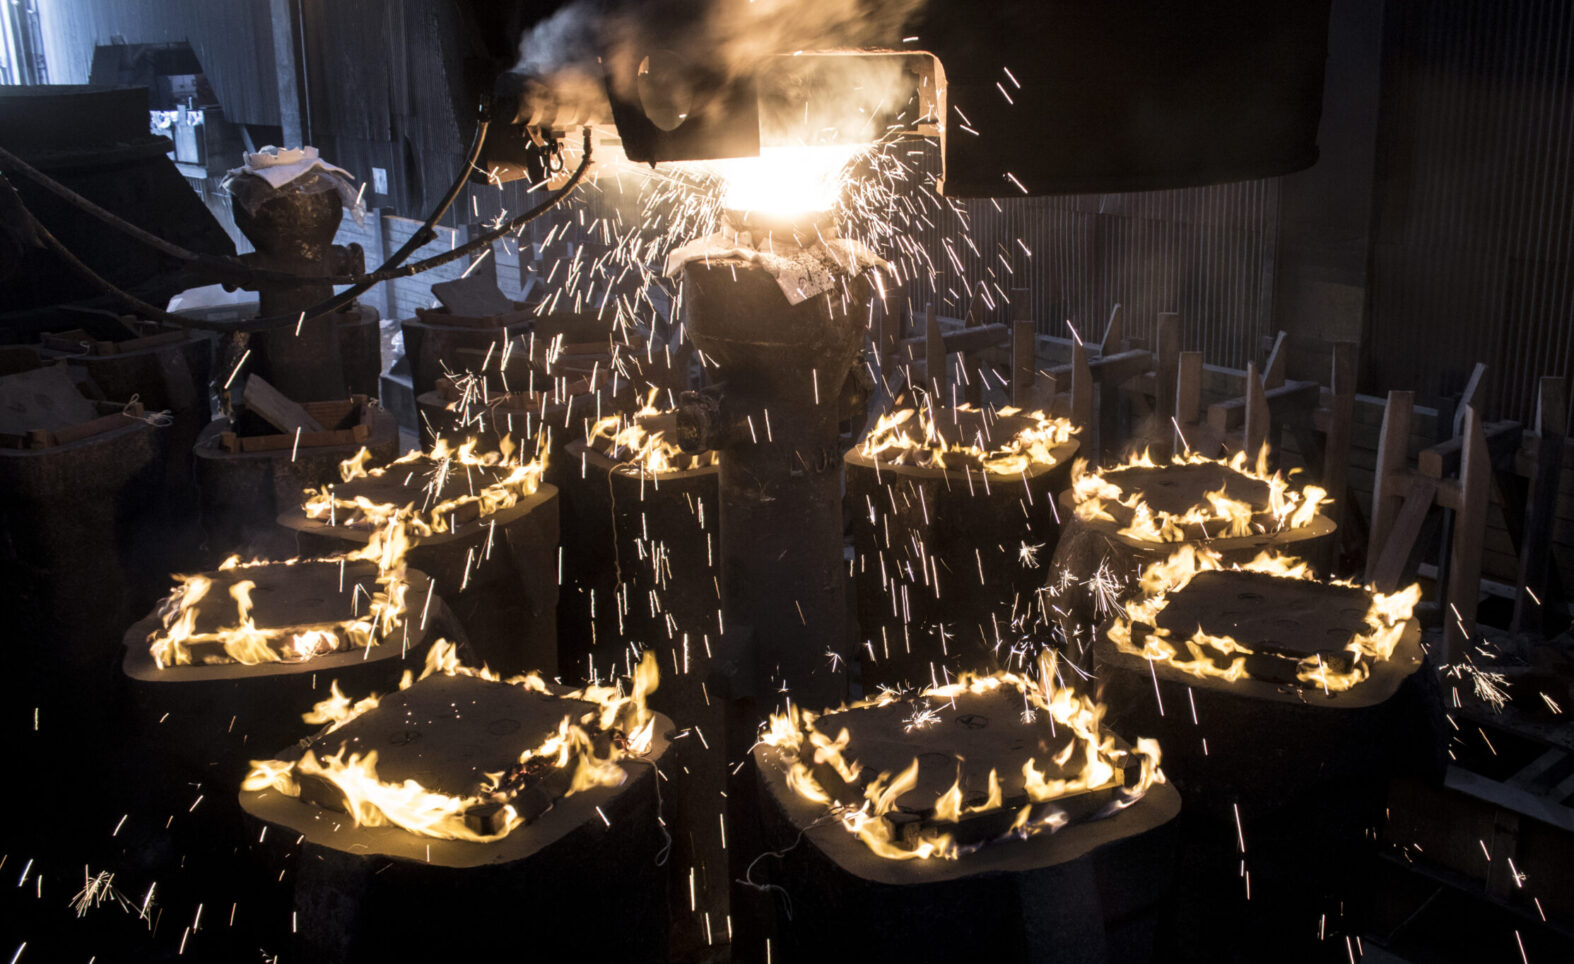 Ingot-credible: LIBERTY Steel UK turns ‘waste’ into pure profit